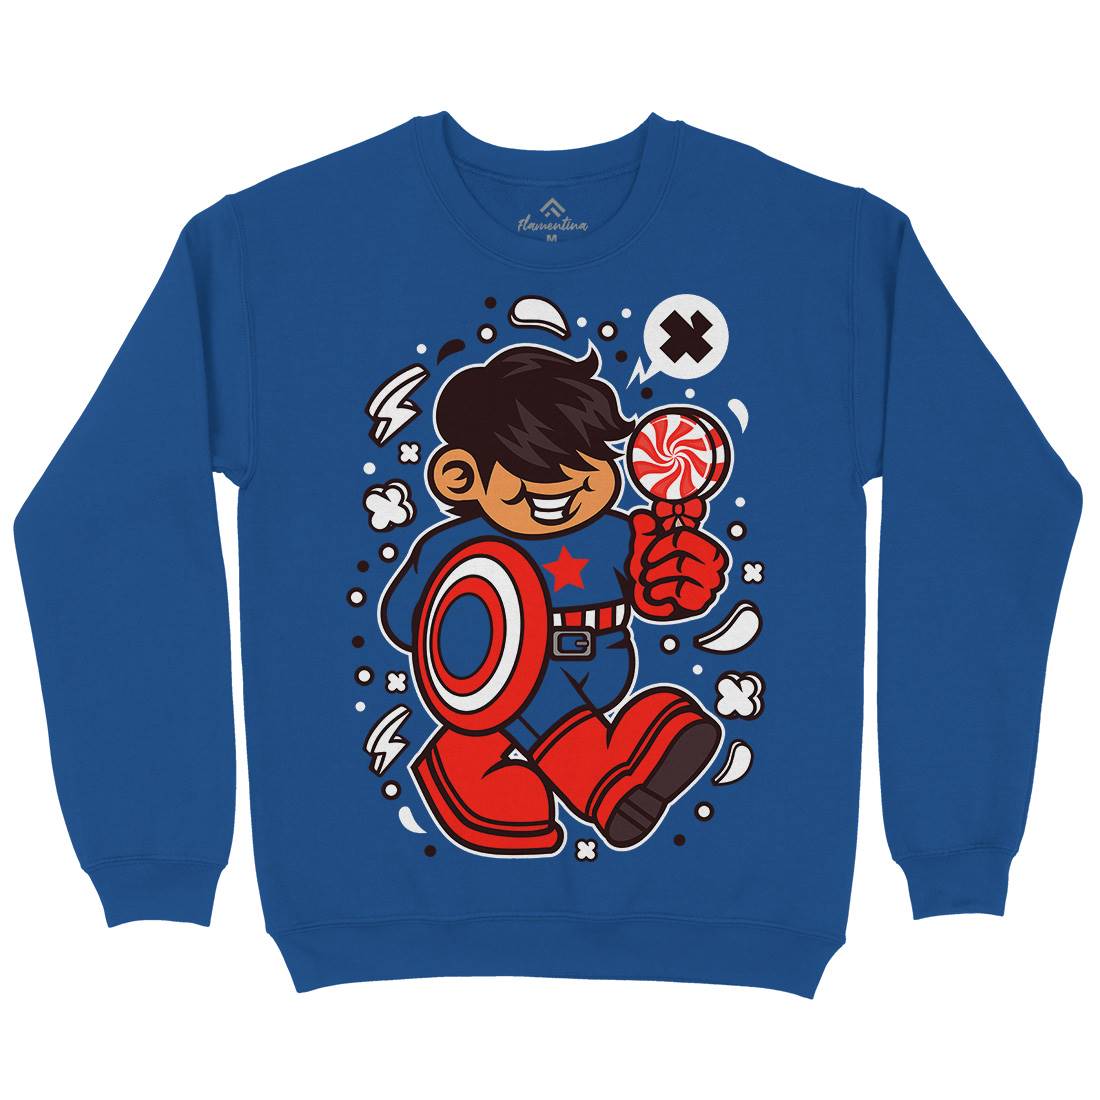 Superhero American Kid Kids Crew Neck Sweatshirt Geek C263